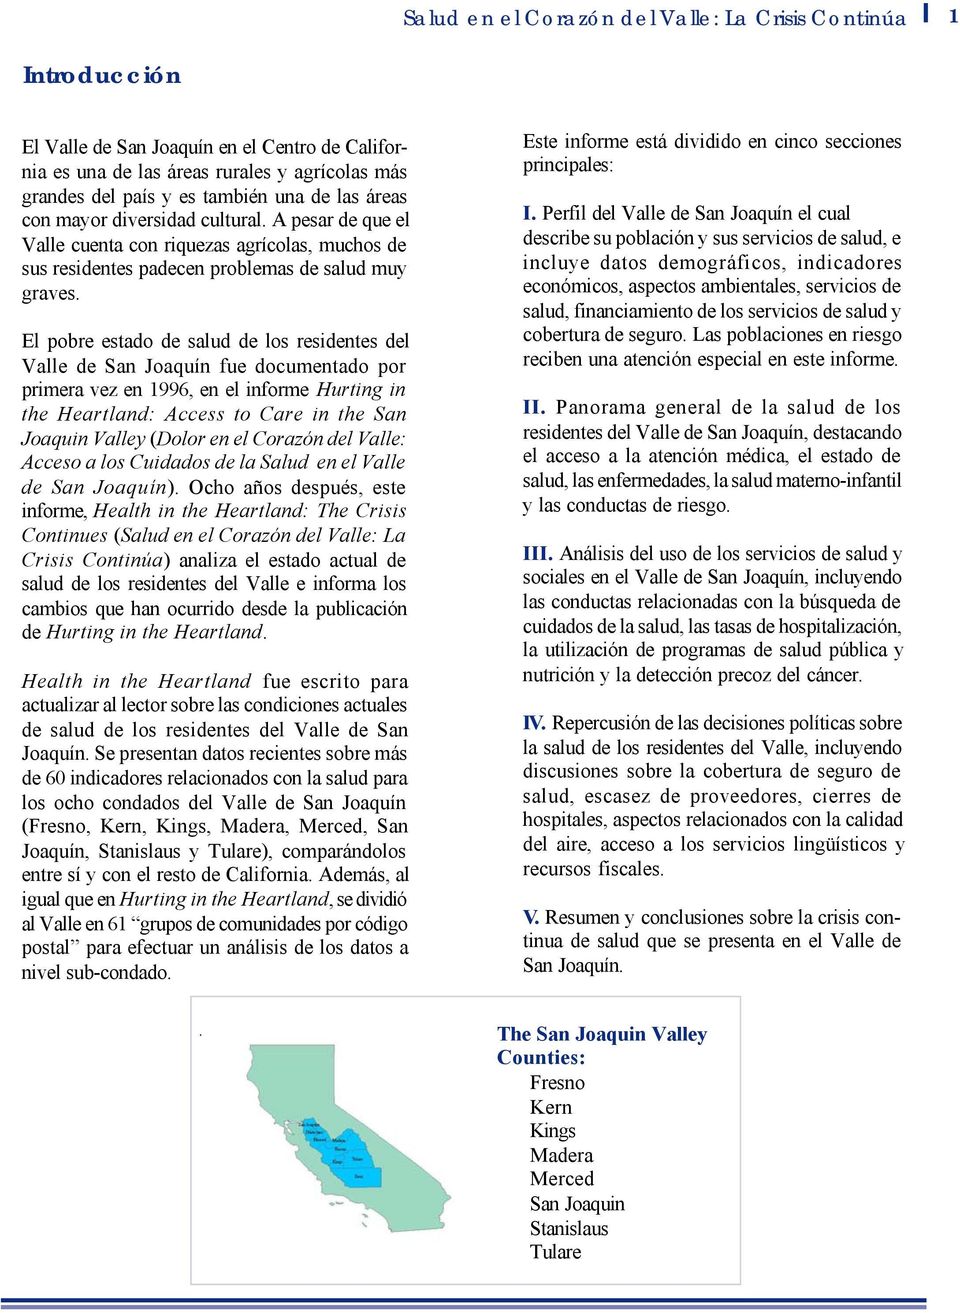 El pobre estado de salud de los residentes del Valle de San Joaquín fue documentado por primera vez en 1996, en el informe Hurting in the Heartland: Access to Care in the San Joaquin Valley (Dolor en